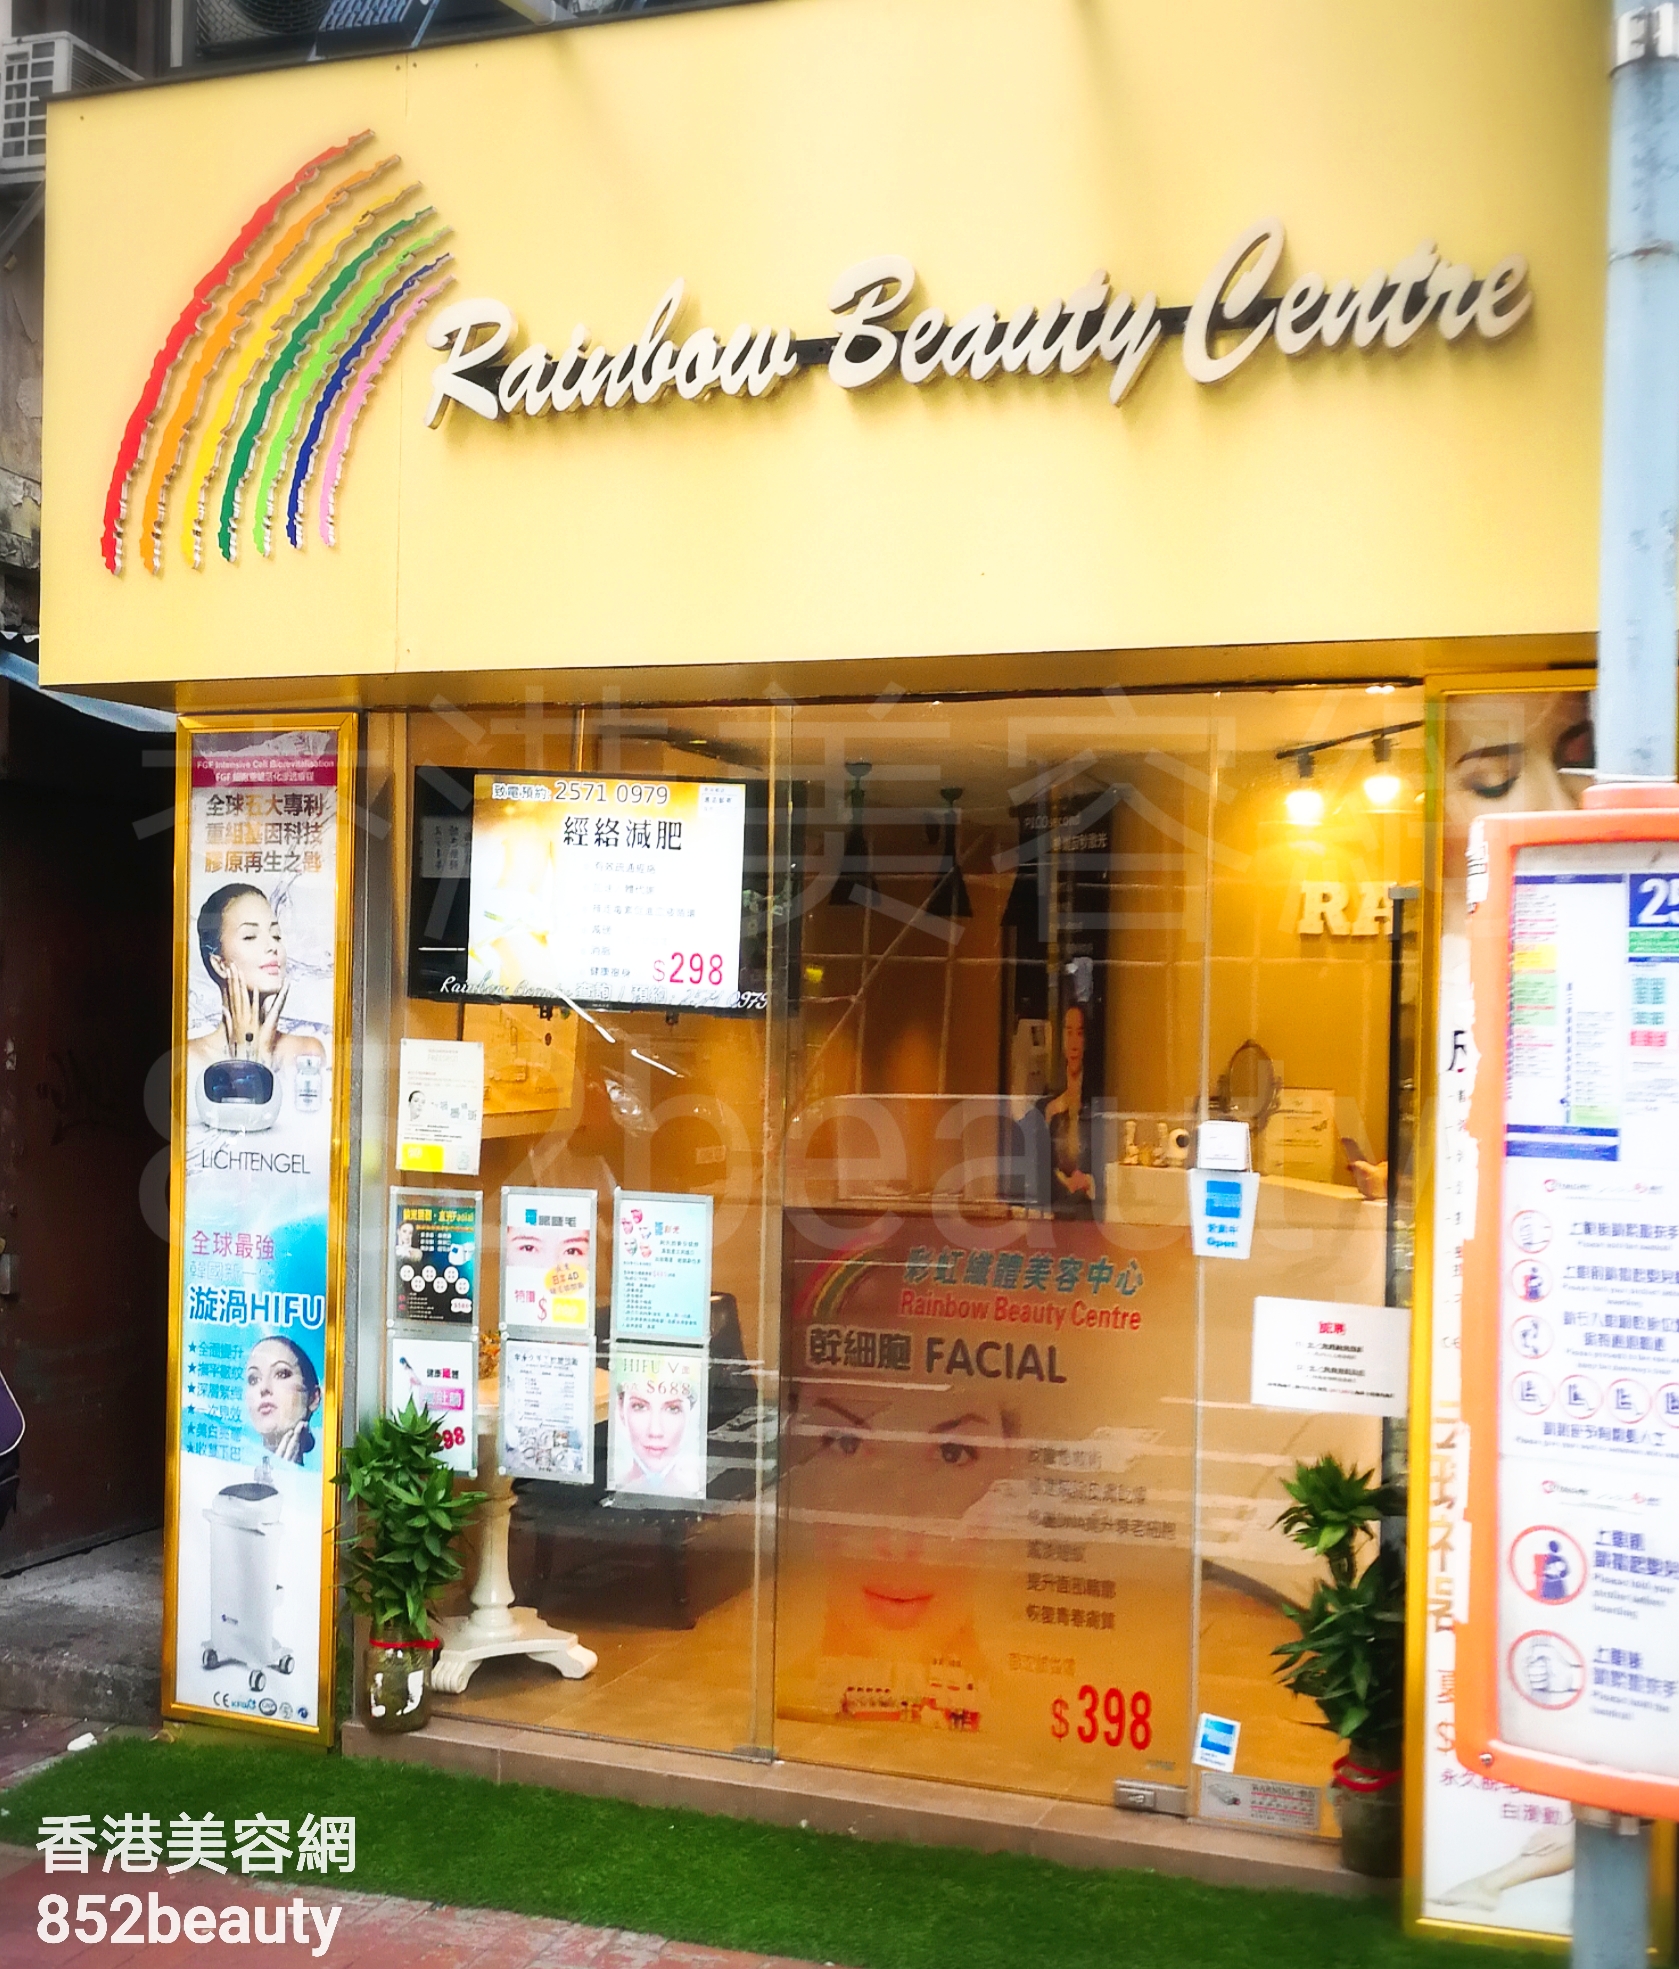 Hair Removal: Rainbow Beauty Centre